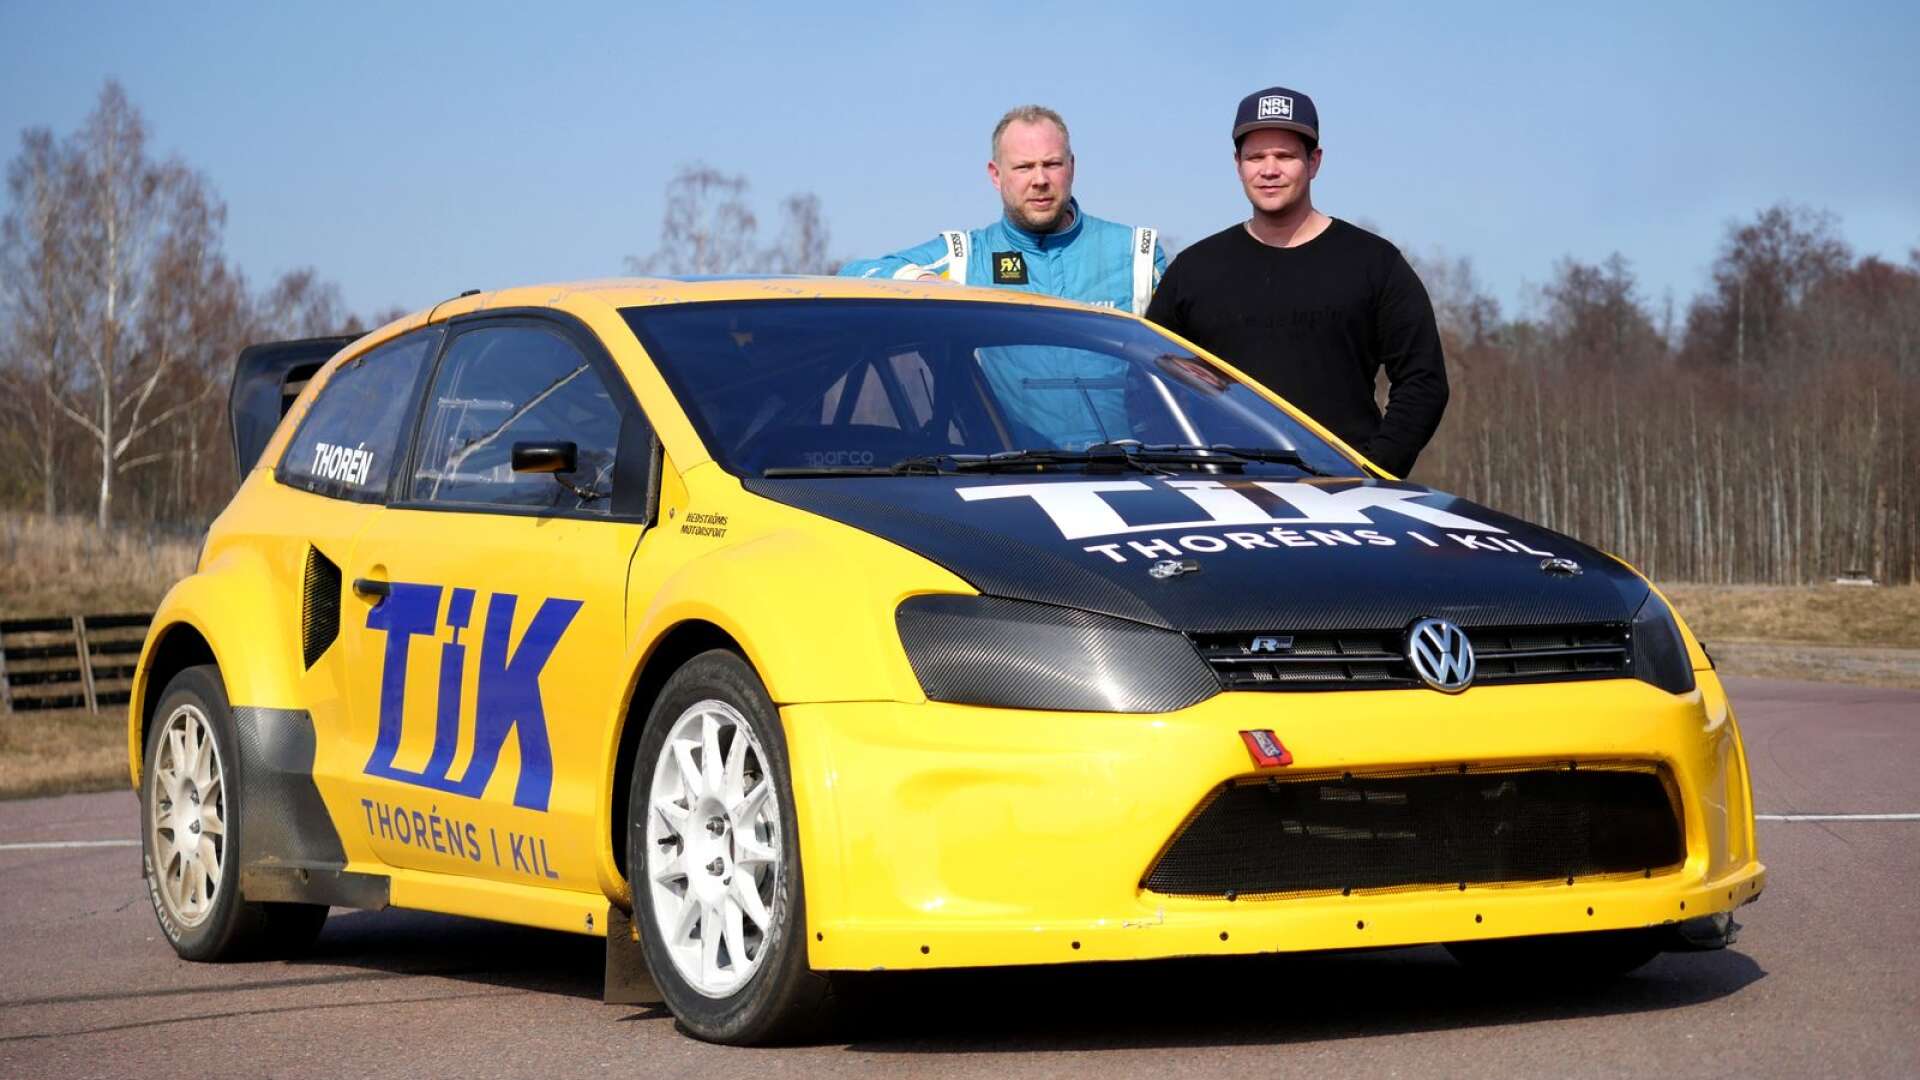 Daniel Thorén fortsätter sin storsatsning på rallycross ihop med Peter Hedström i Hedströms Motorsport.